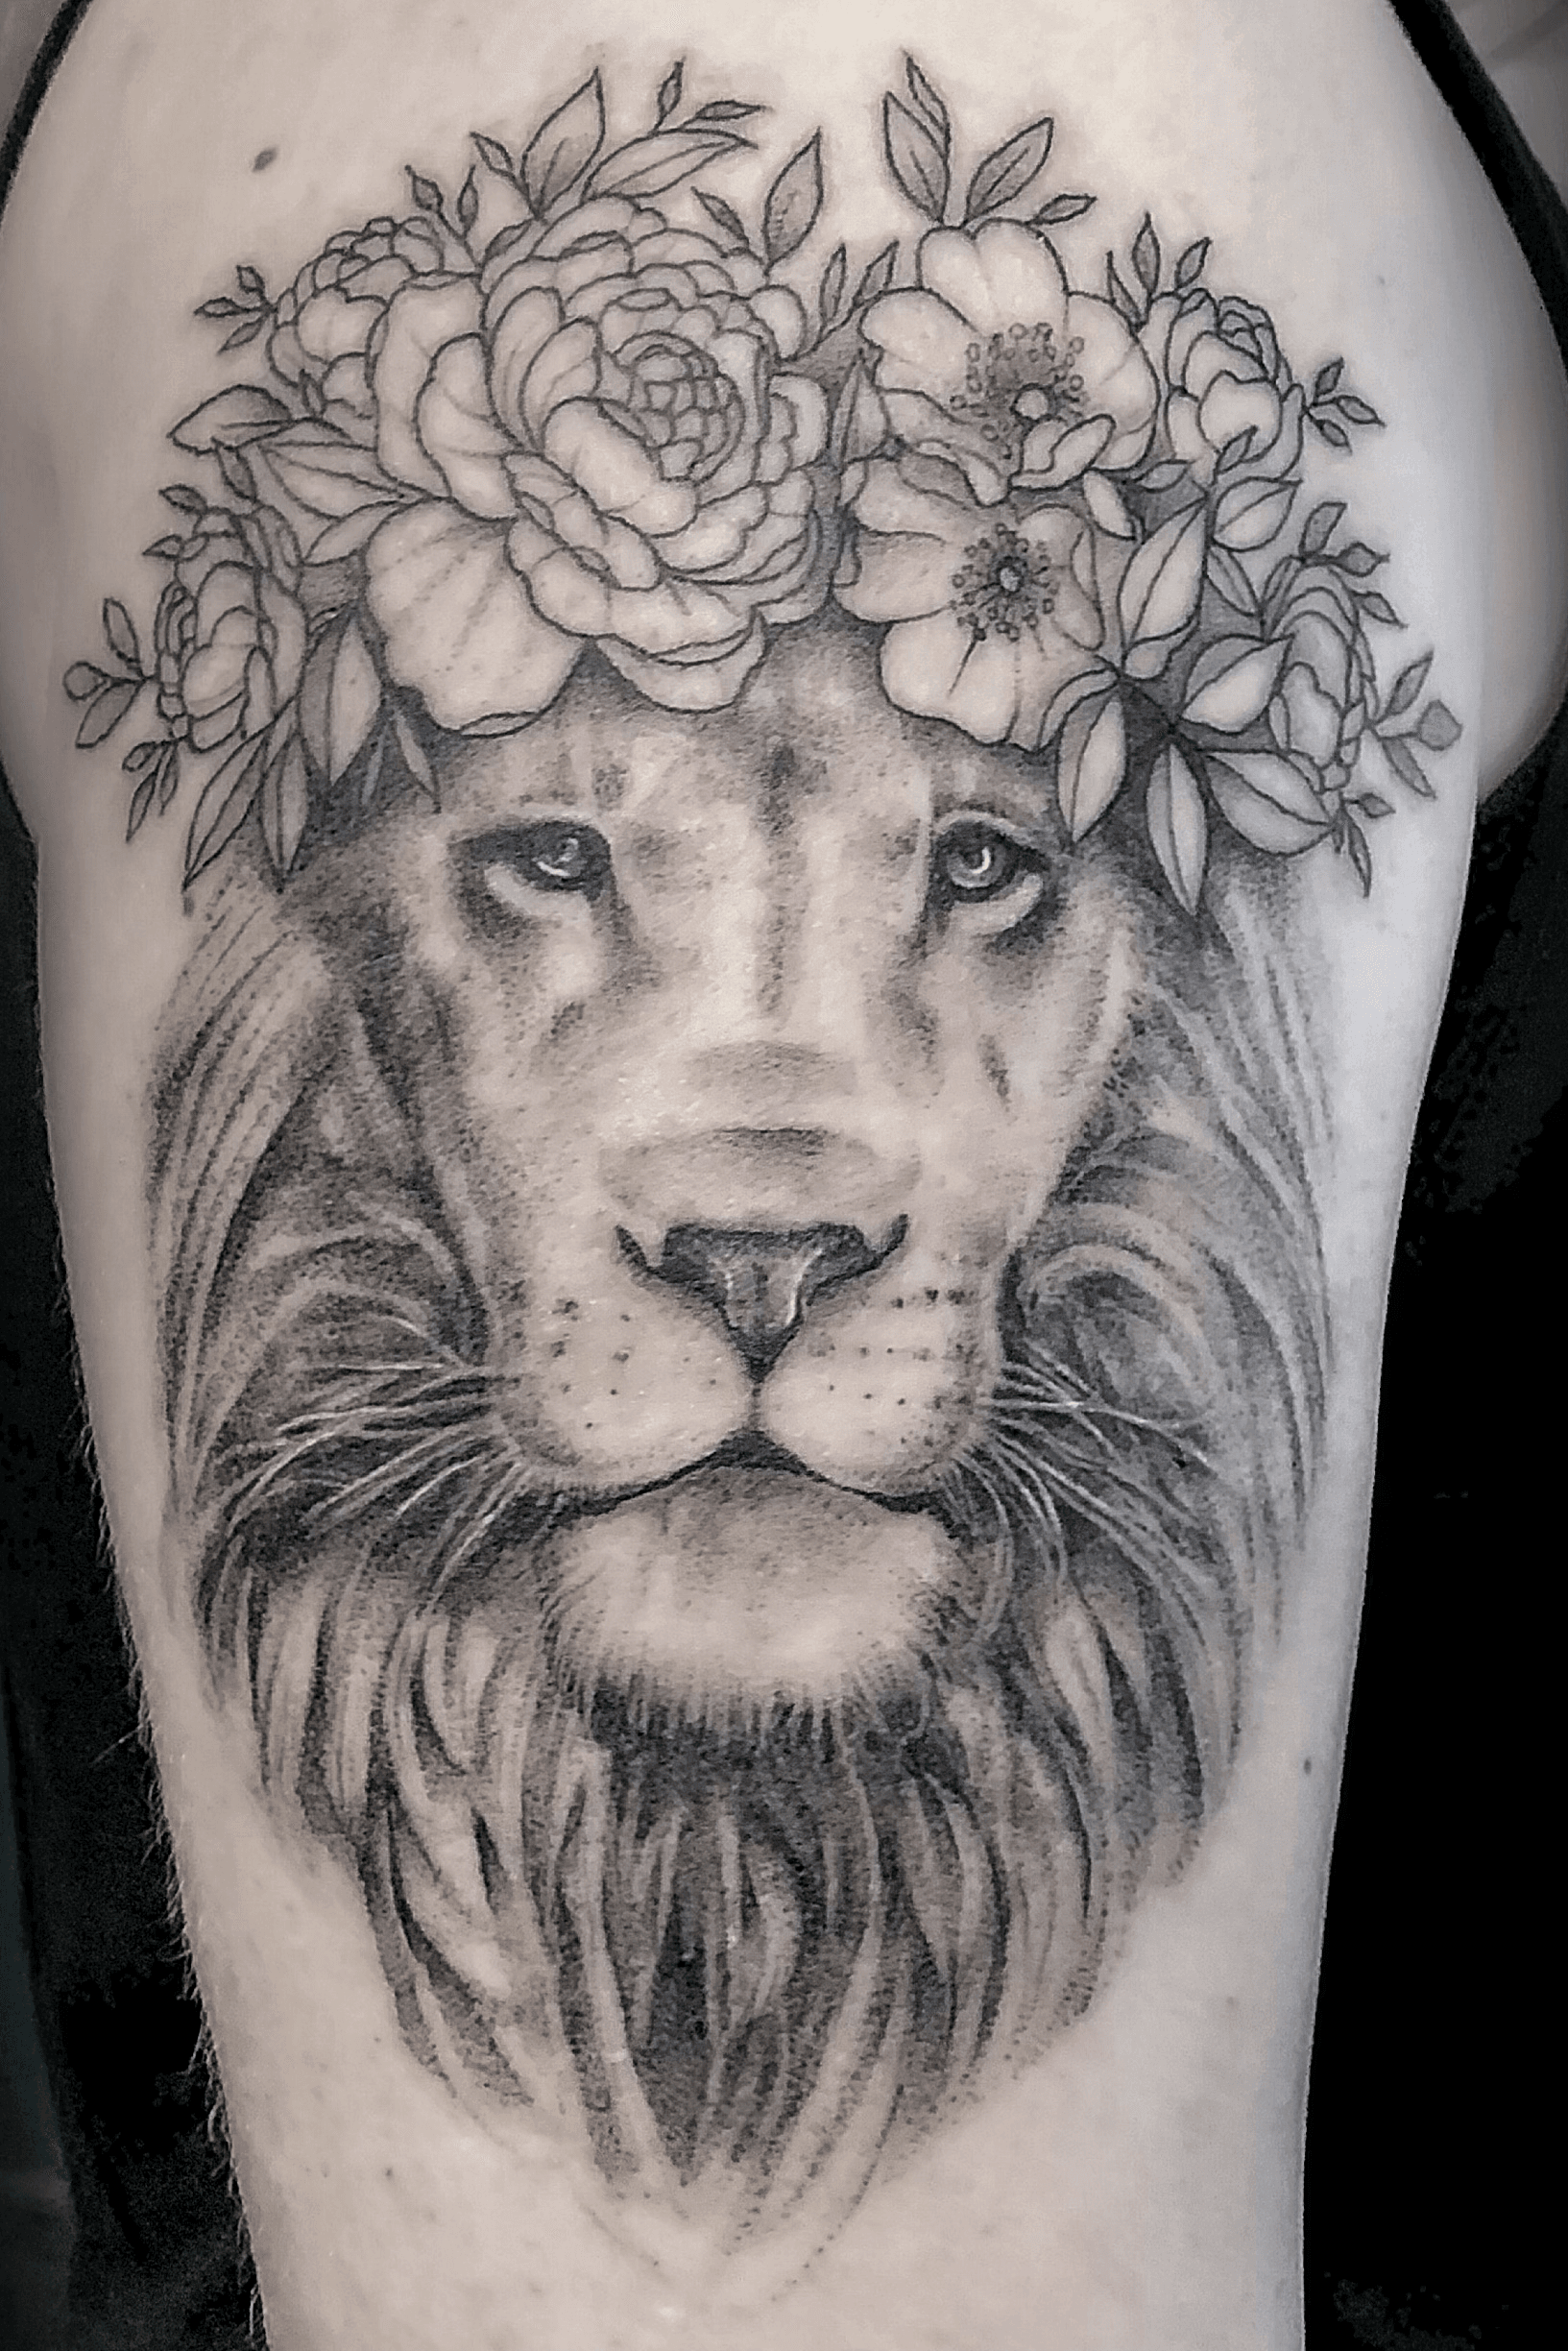 Machine Tattoo Alberto  Flower Lion machinetattooalberto  machinetattoo tattoo spain lion flower flowerlion flowerliontattoo  ink inktattoo inked  Facebook